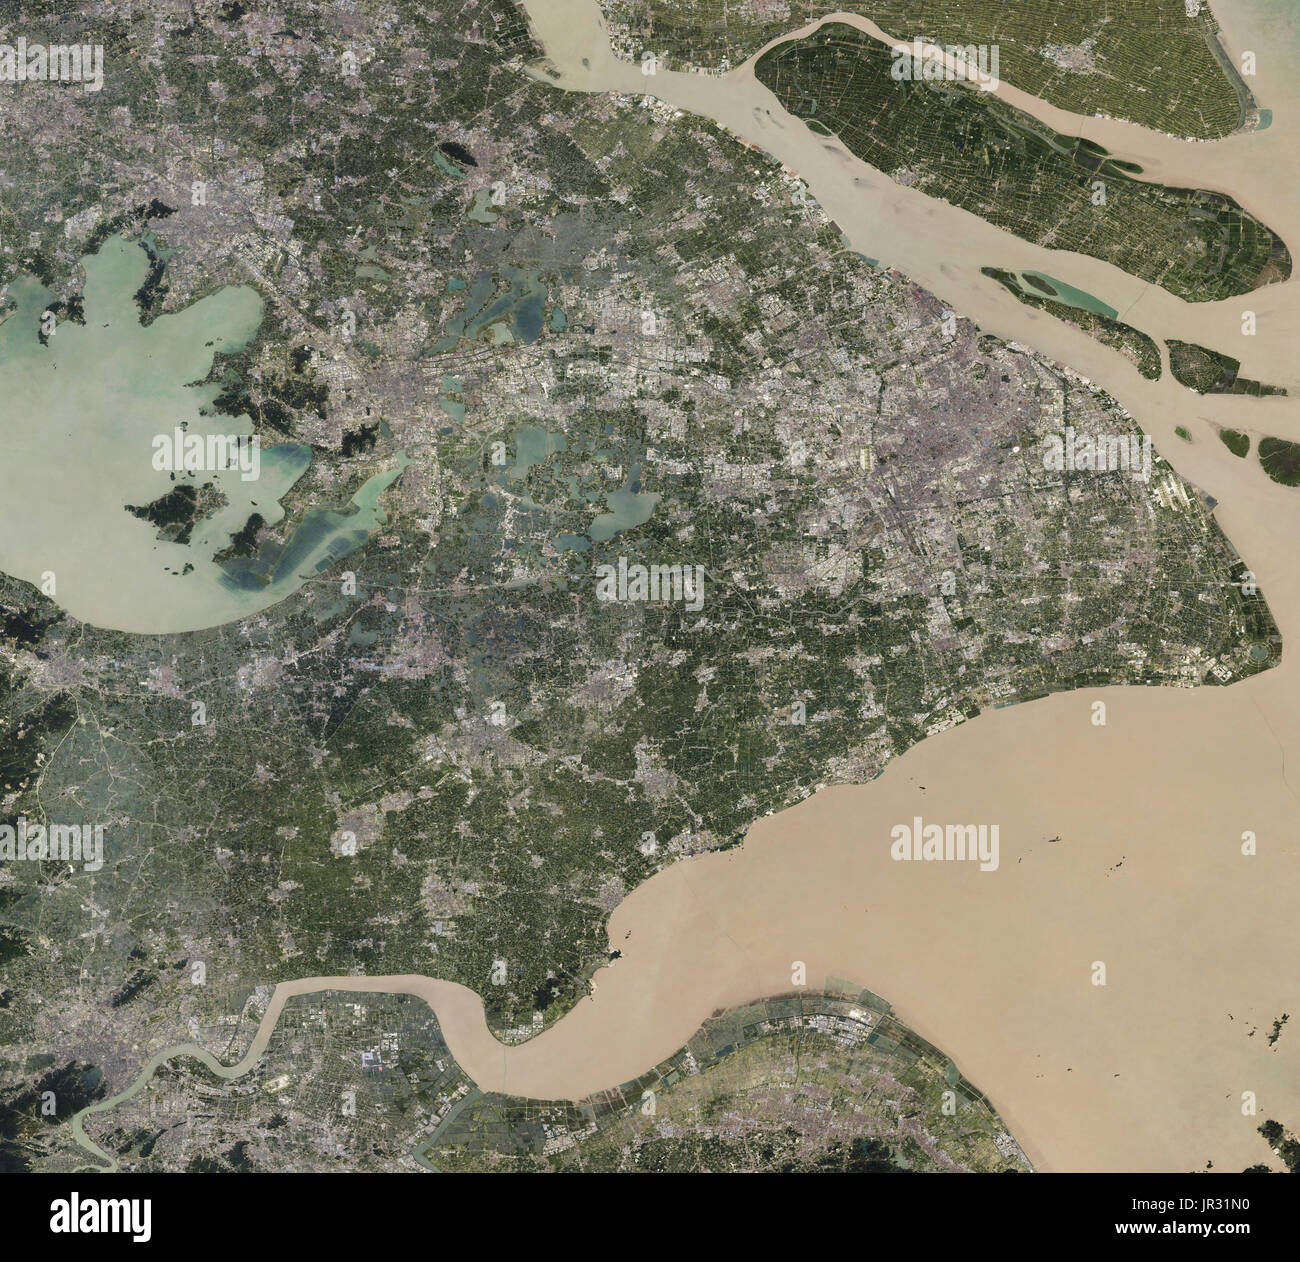 Shanghai, China, capturado por la tierra operacionales Imager (OLI) en el Landsat 8 entre 2013 y 2017. Comparar con JG5370, mostrando Shanghai desde finales de los años ochenta. Foto de stock